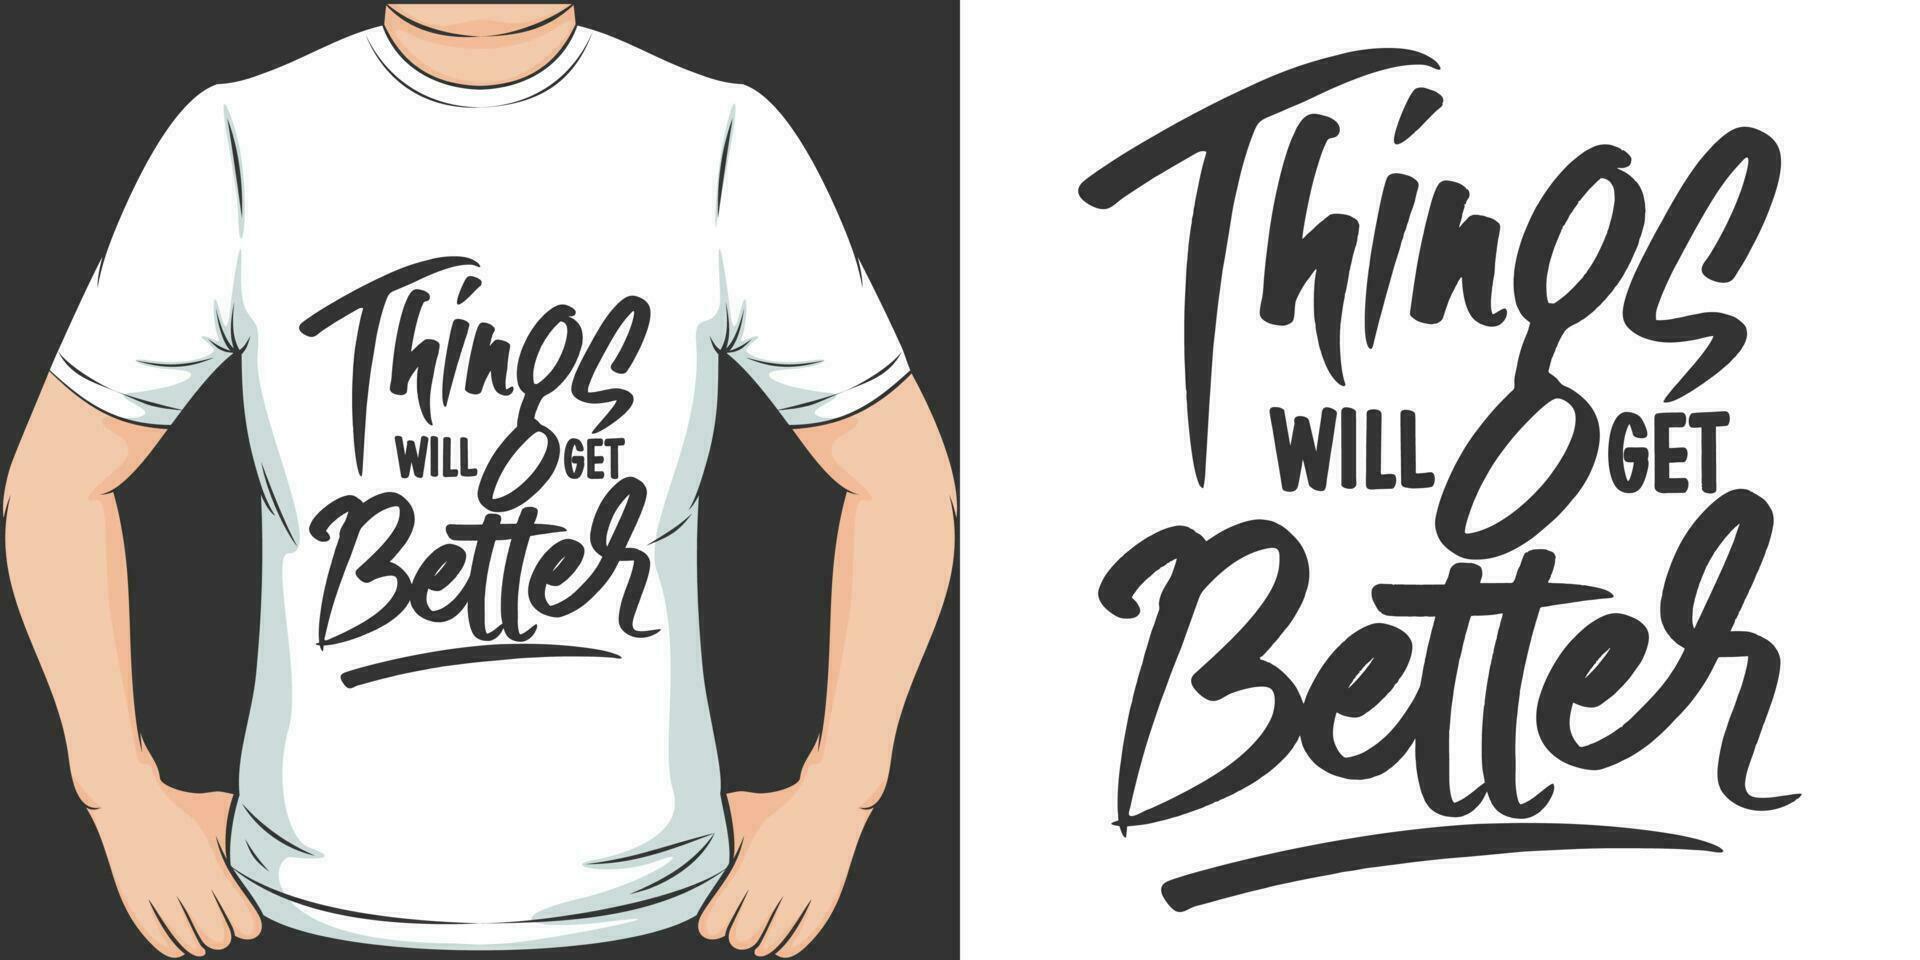 des choses volonté avoir mieux, de motivation citation T-shirt conception. vecteur